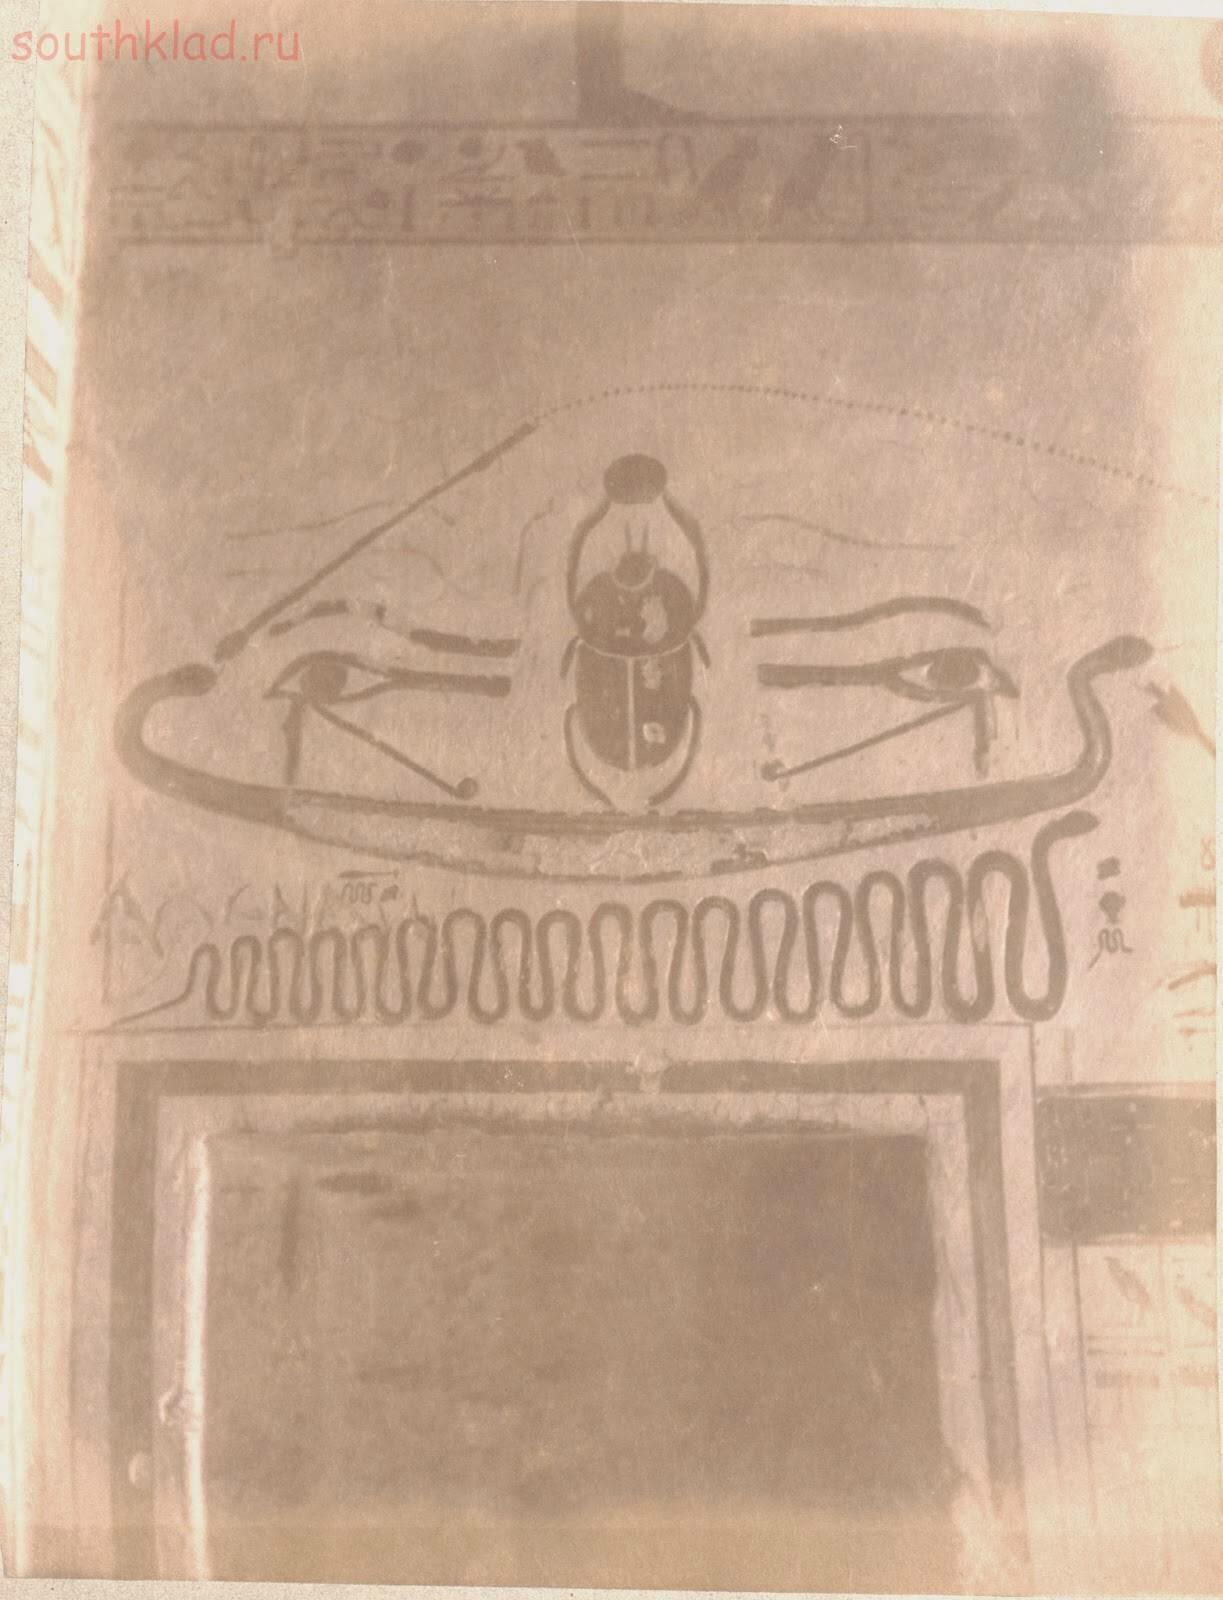 Снимки Египта 1895 года - 0_10a4ab_3b546953_orig.jpg